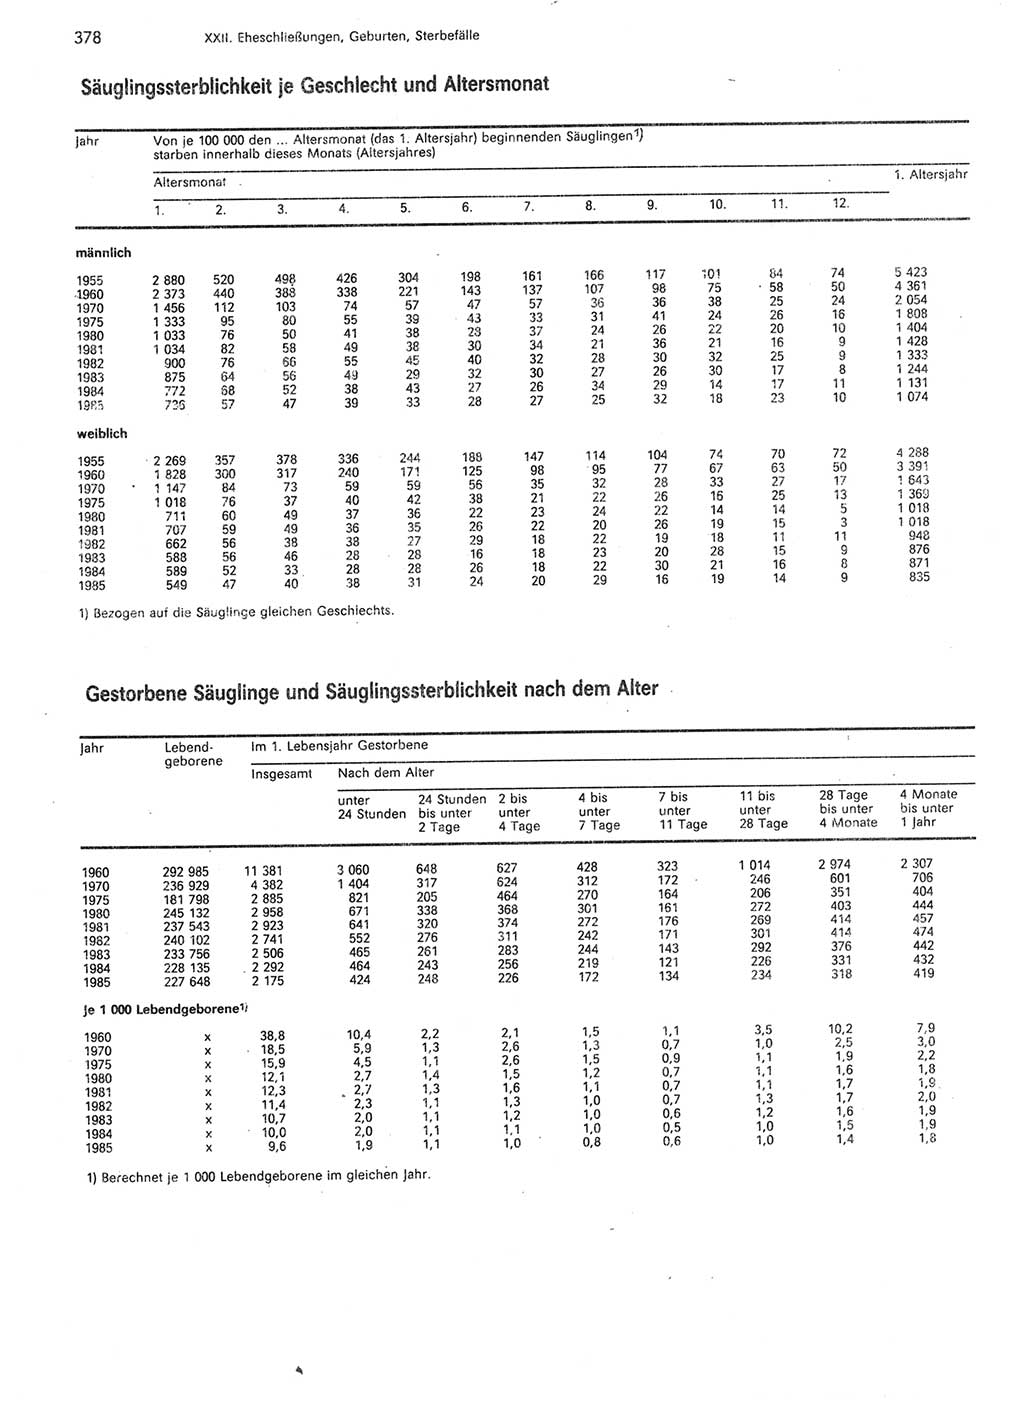 Statistisches Jahrbuch der Deutschen Demokratischen Republik (DDR) 1987, Seite 378 (Stat. Jb. DDR 1987, S. 378)